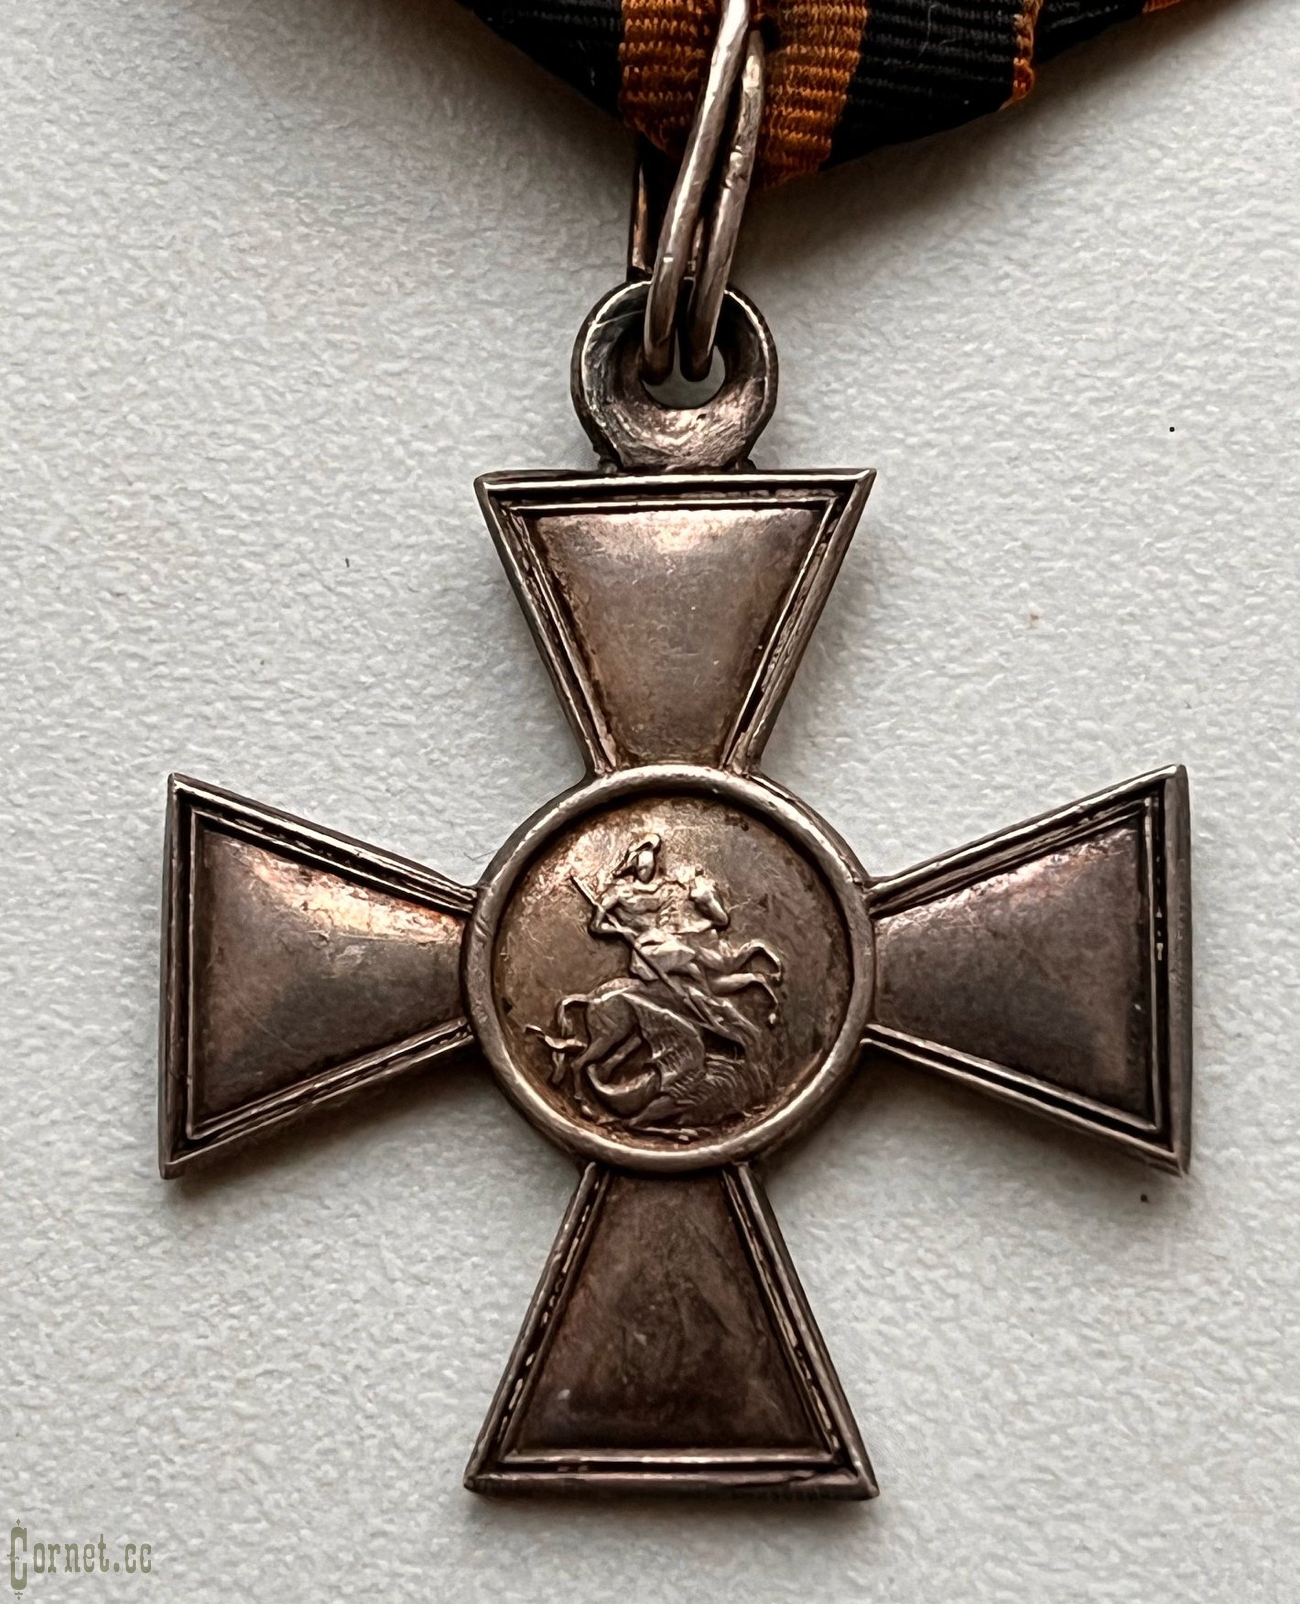 Георгиевский крест 4 степени №725587